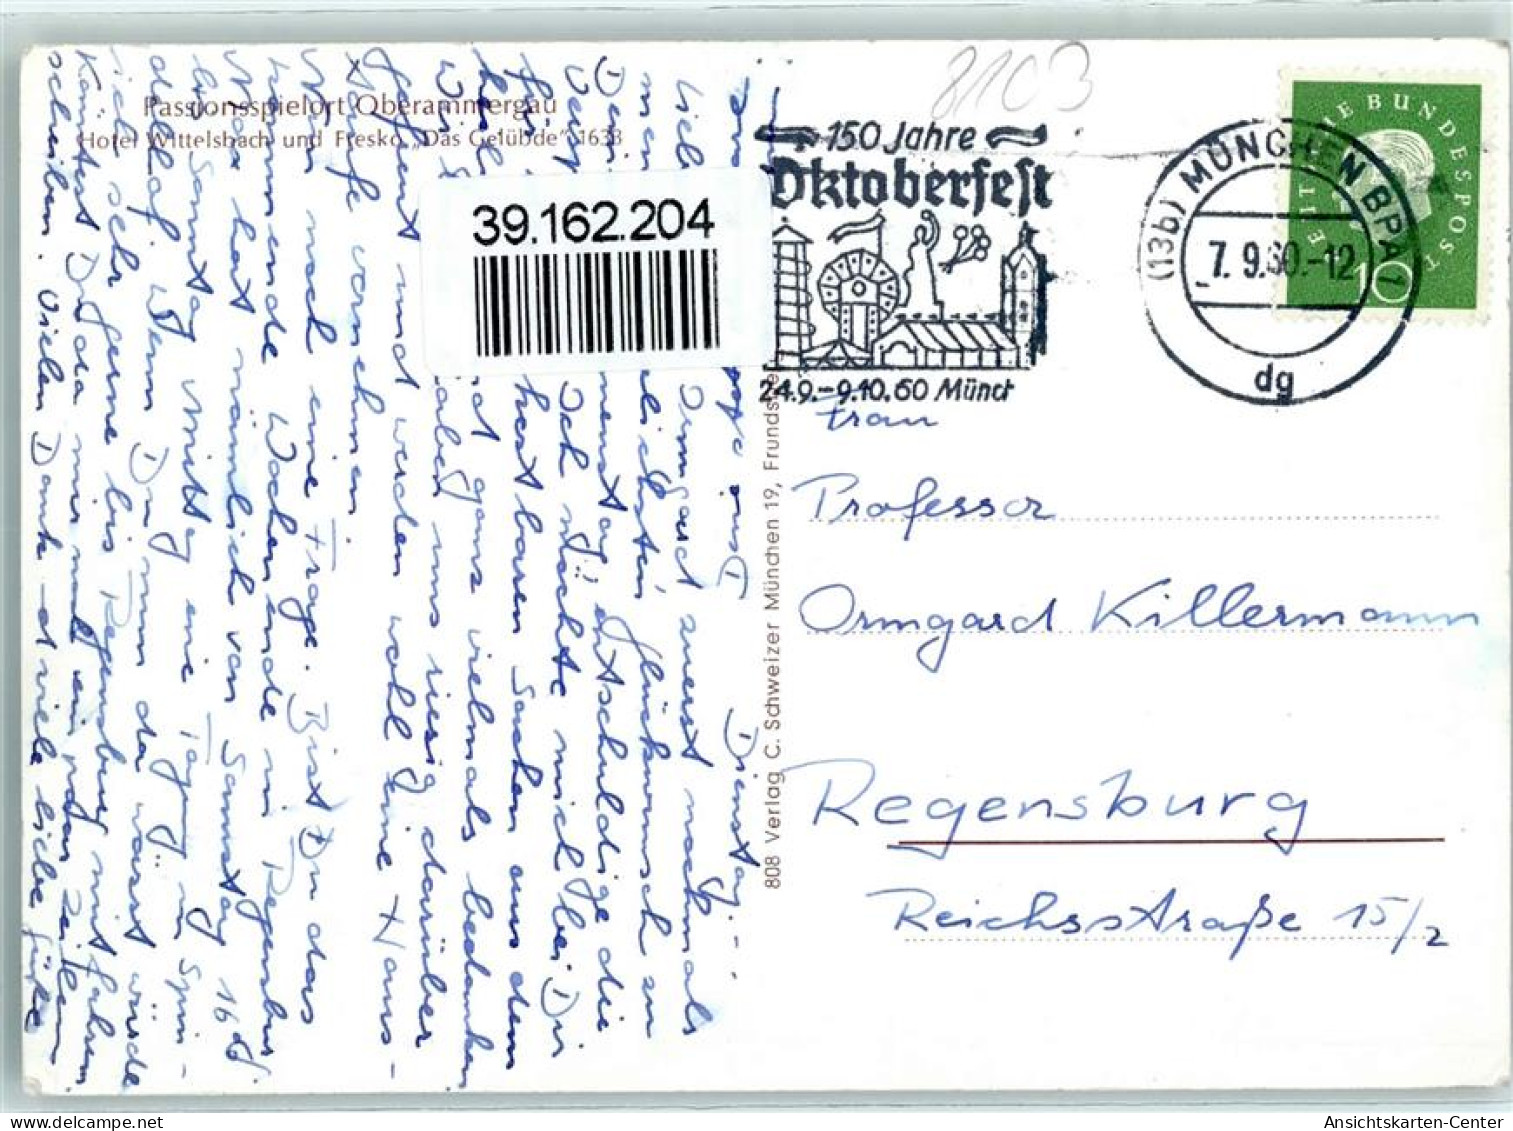 39162204 - Oberammergau - Oberammergau